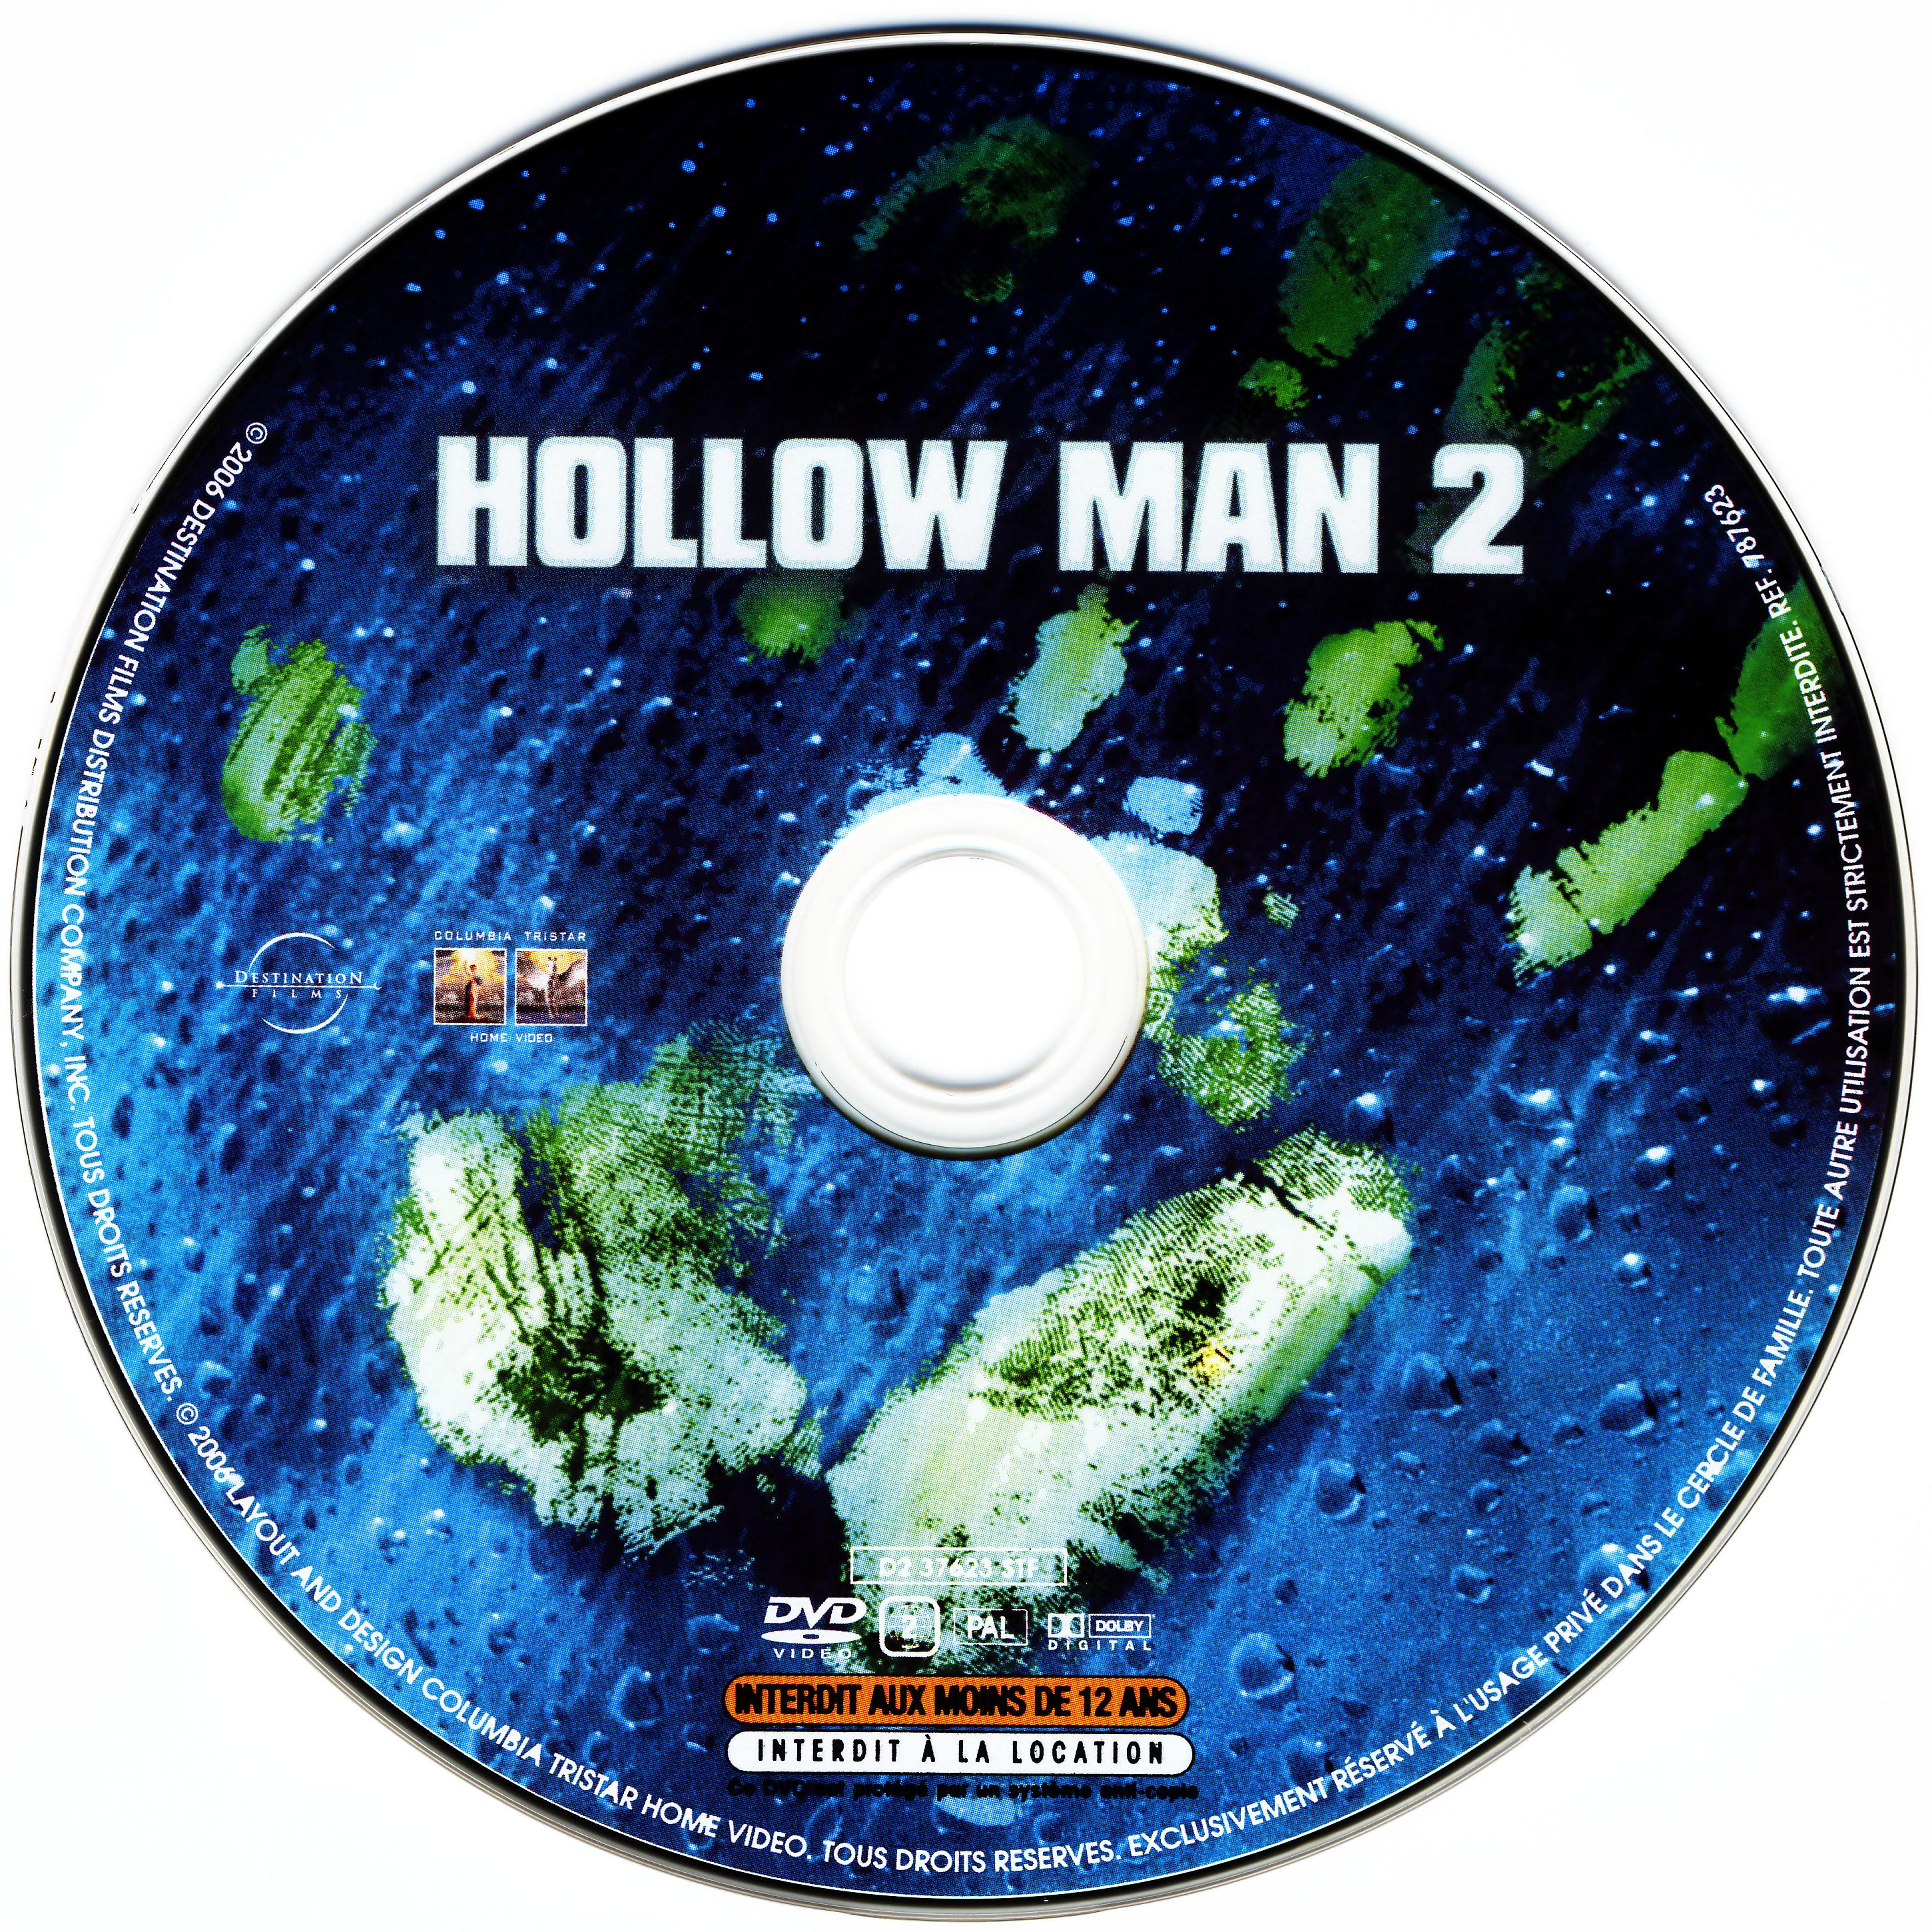 Hollow man 2